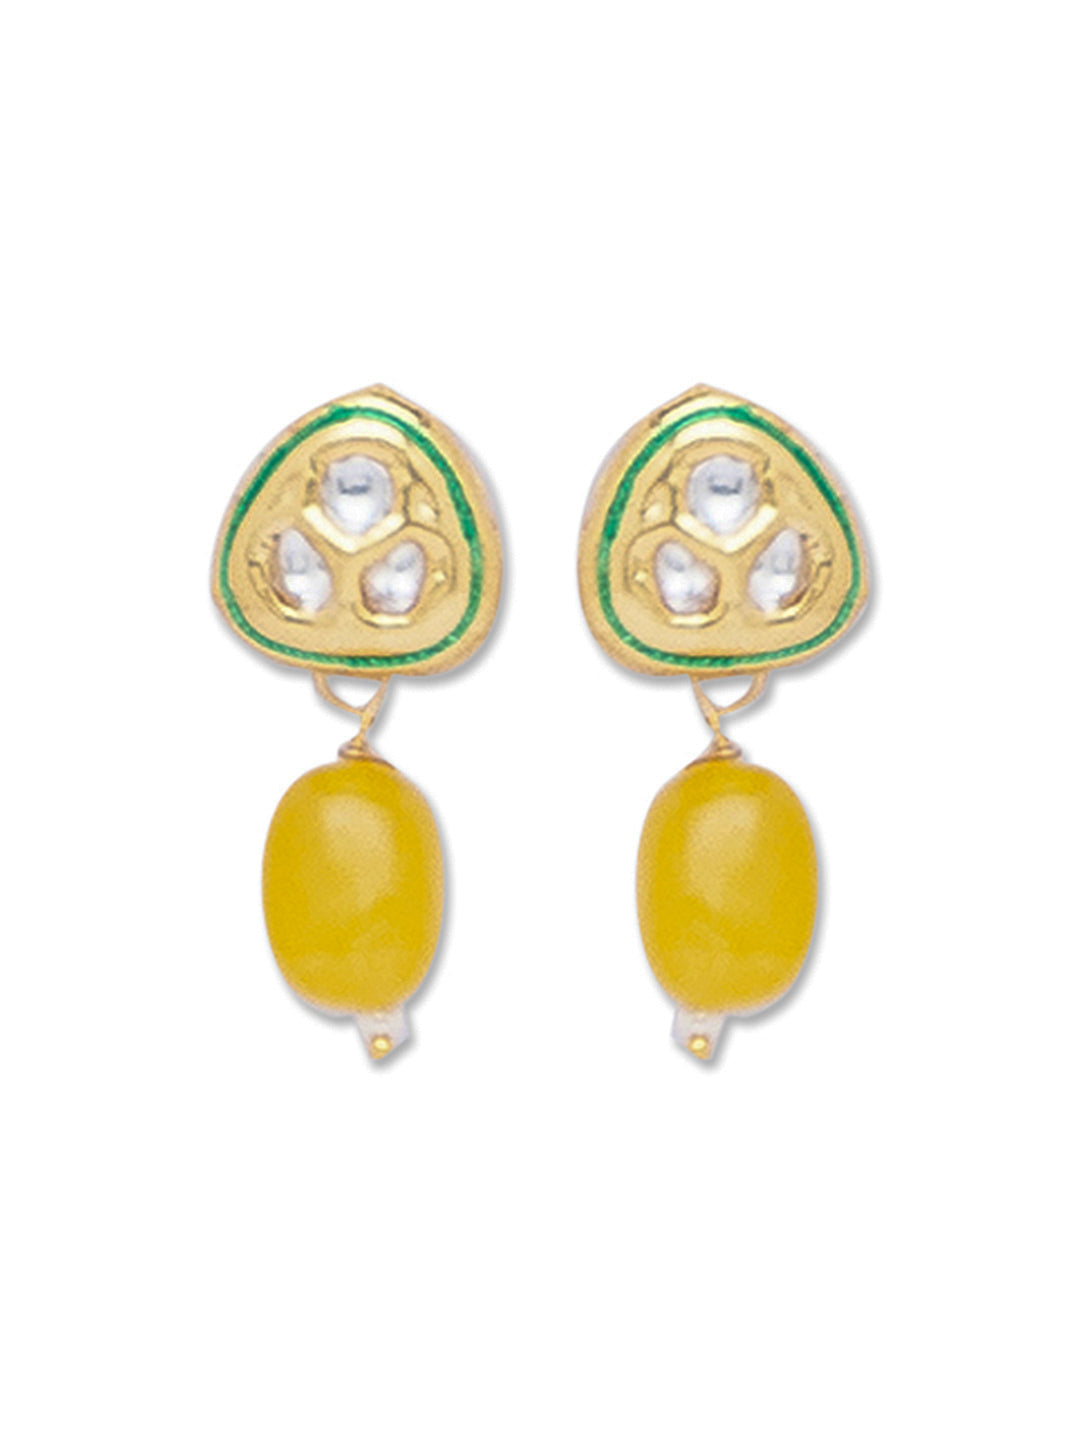 Yellow Gold Tone Kundan Earrings with Onyx